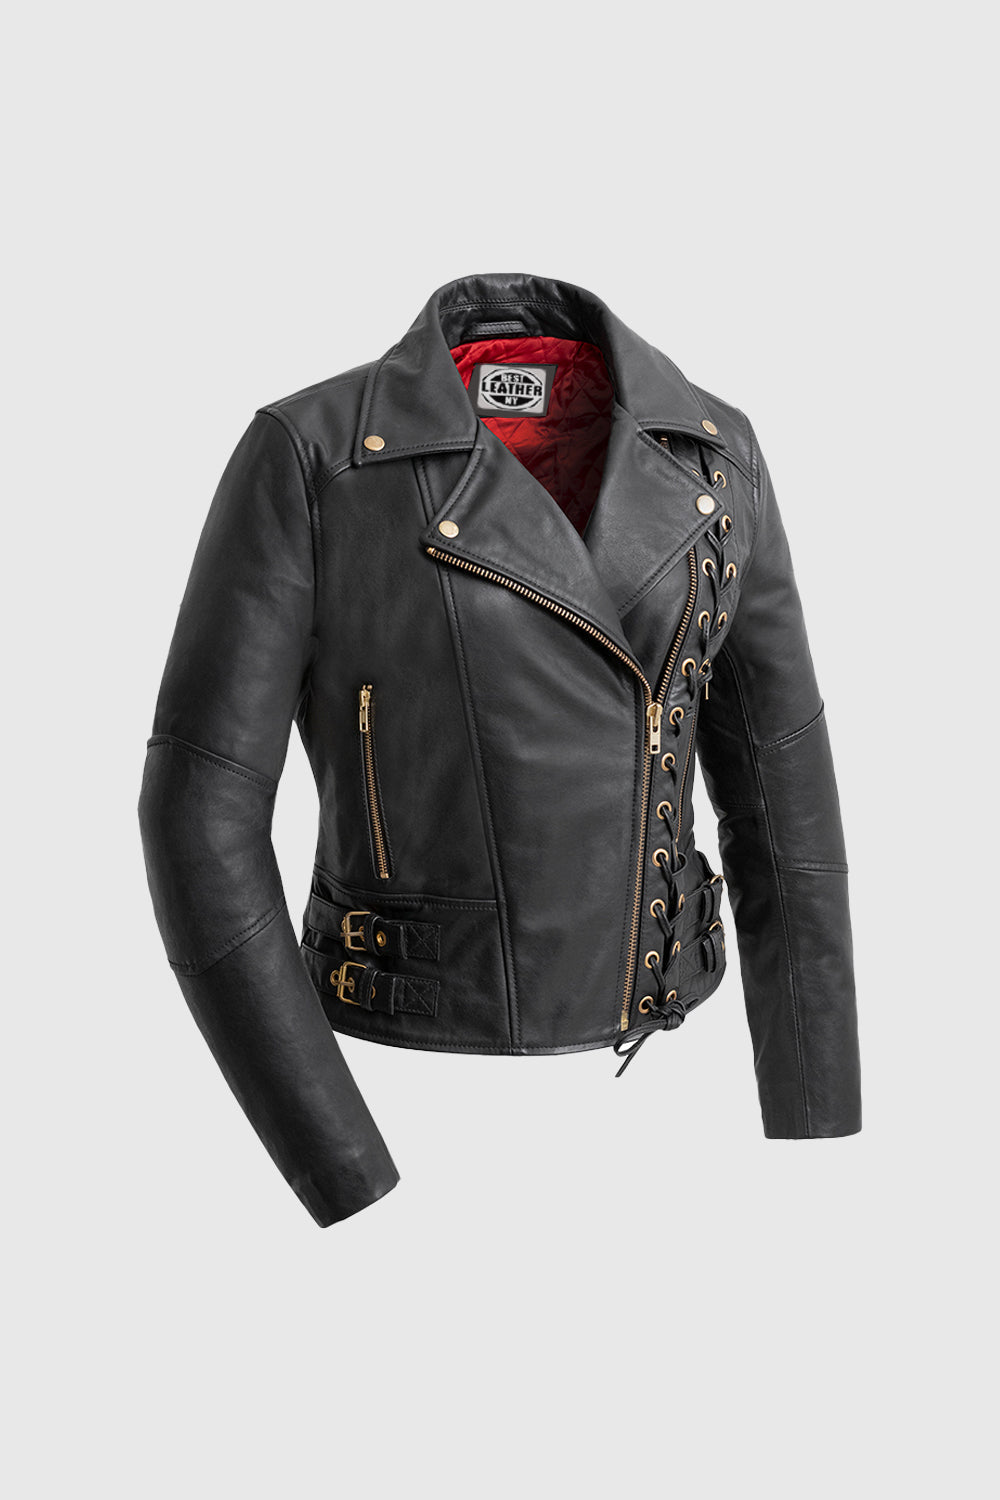 Gisele - Women's Leather Jacket Jacket Best Leather Ny XS Black 